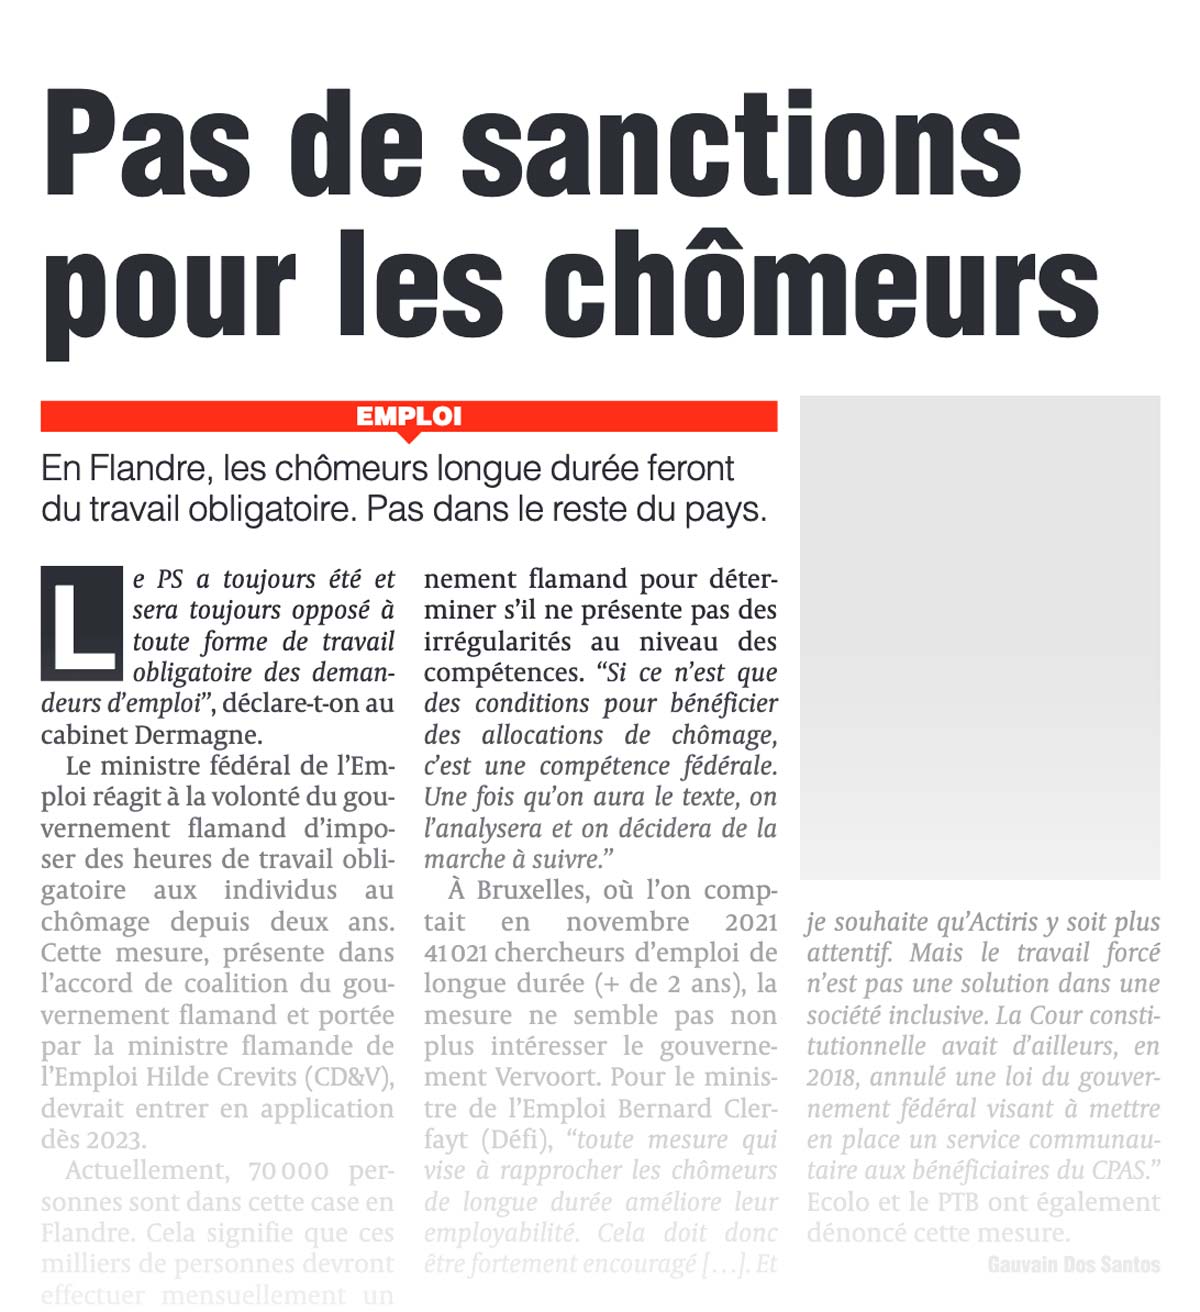 Coupure de presse - La Dernière Heure - "Pas de sanctions pour les chômeurs"